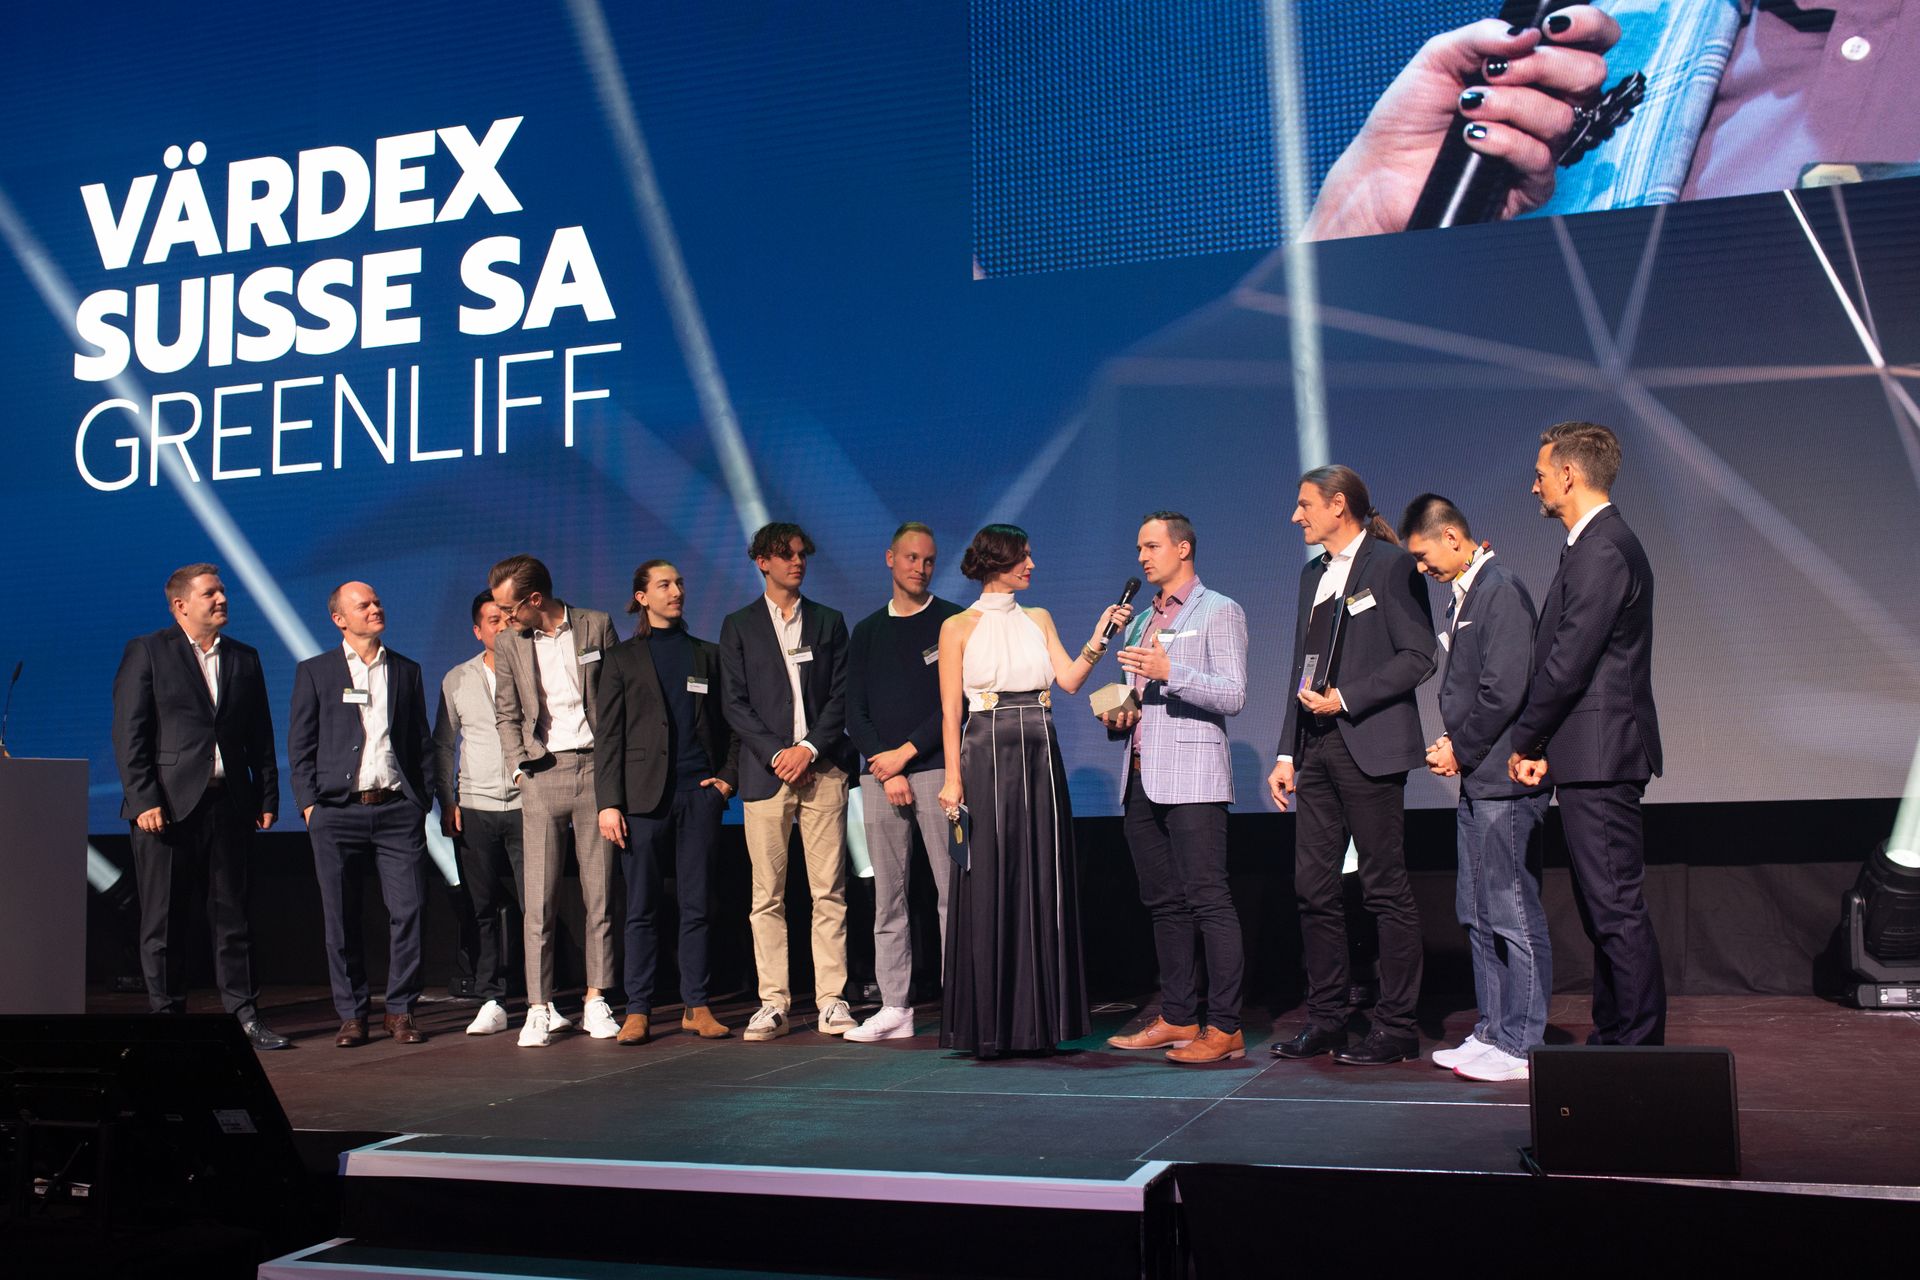 Las empresas "Värdex Suisse" y "Greenliff" fueron galardonadas con los dos mejores premios "Highest Quality" en los "Digital Economy Awards" de Suiza